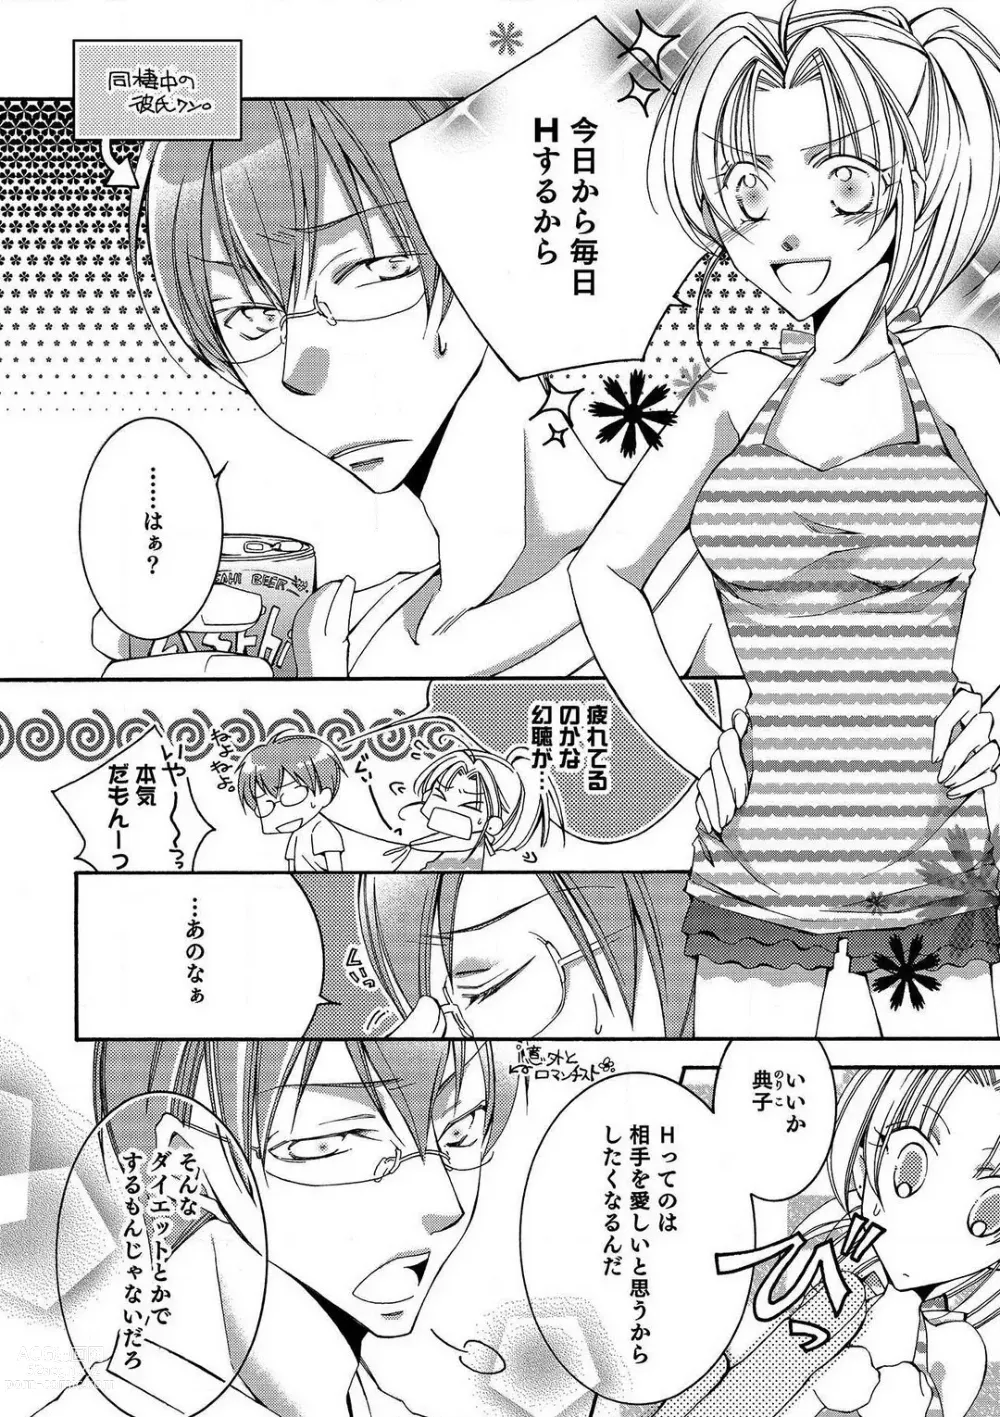 Page 5 of manga LOVE×PLAY 1-4